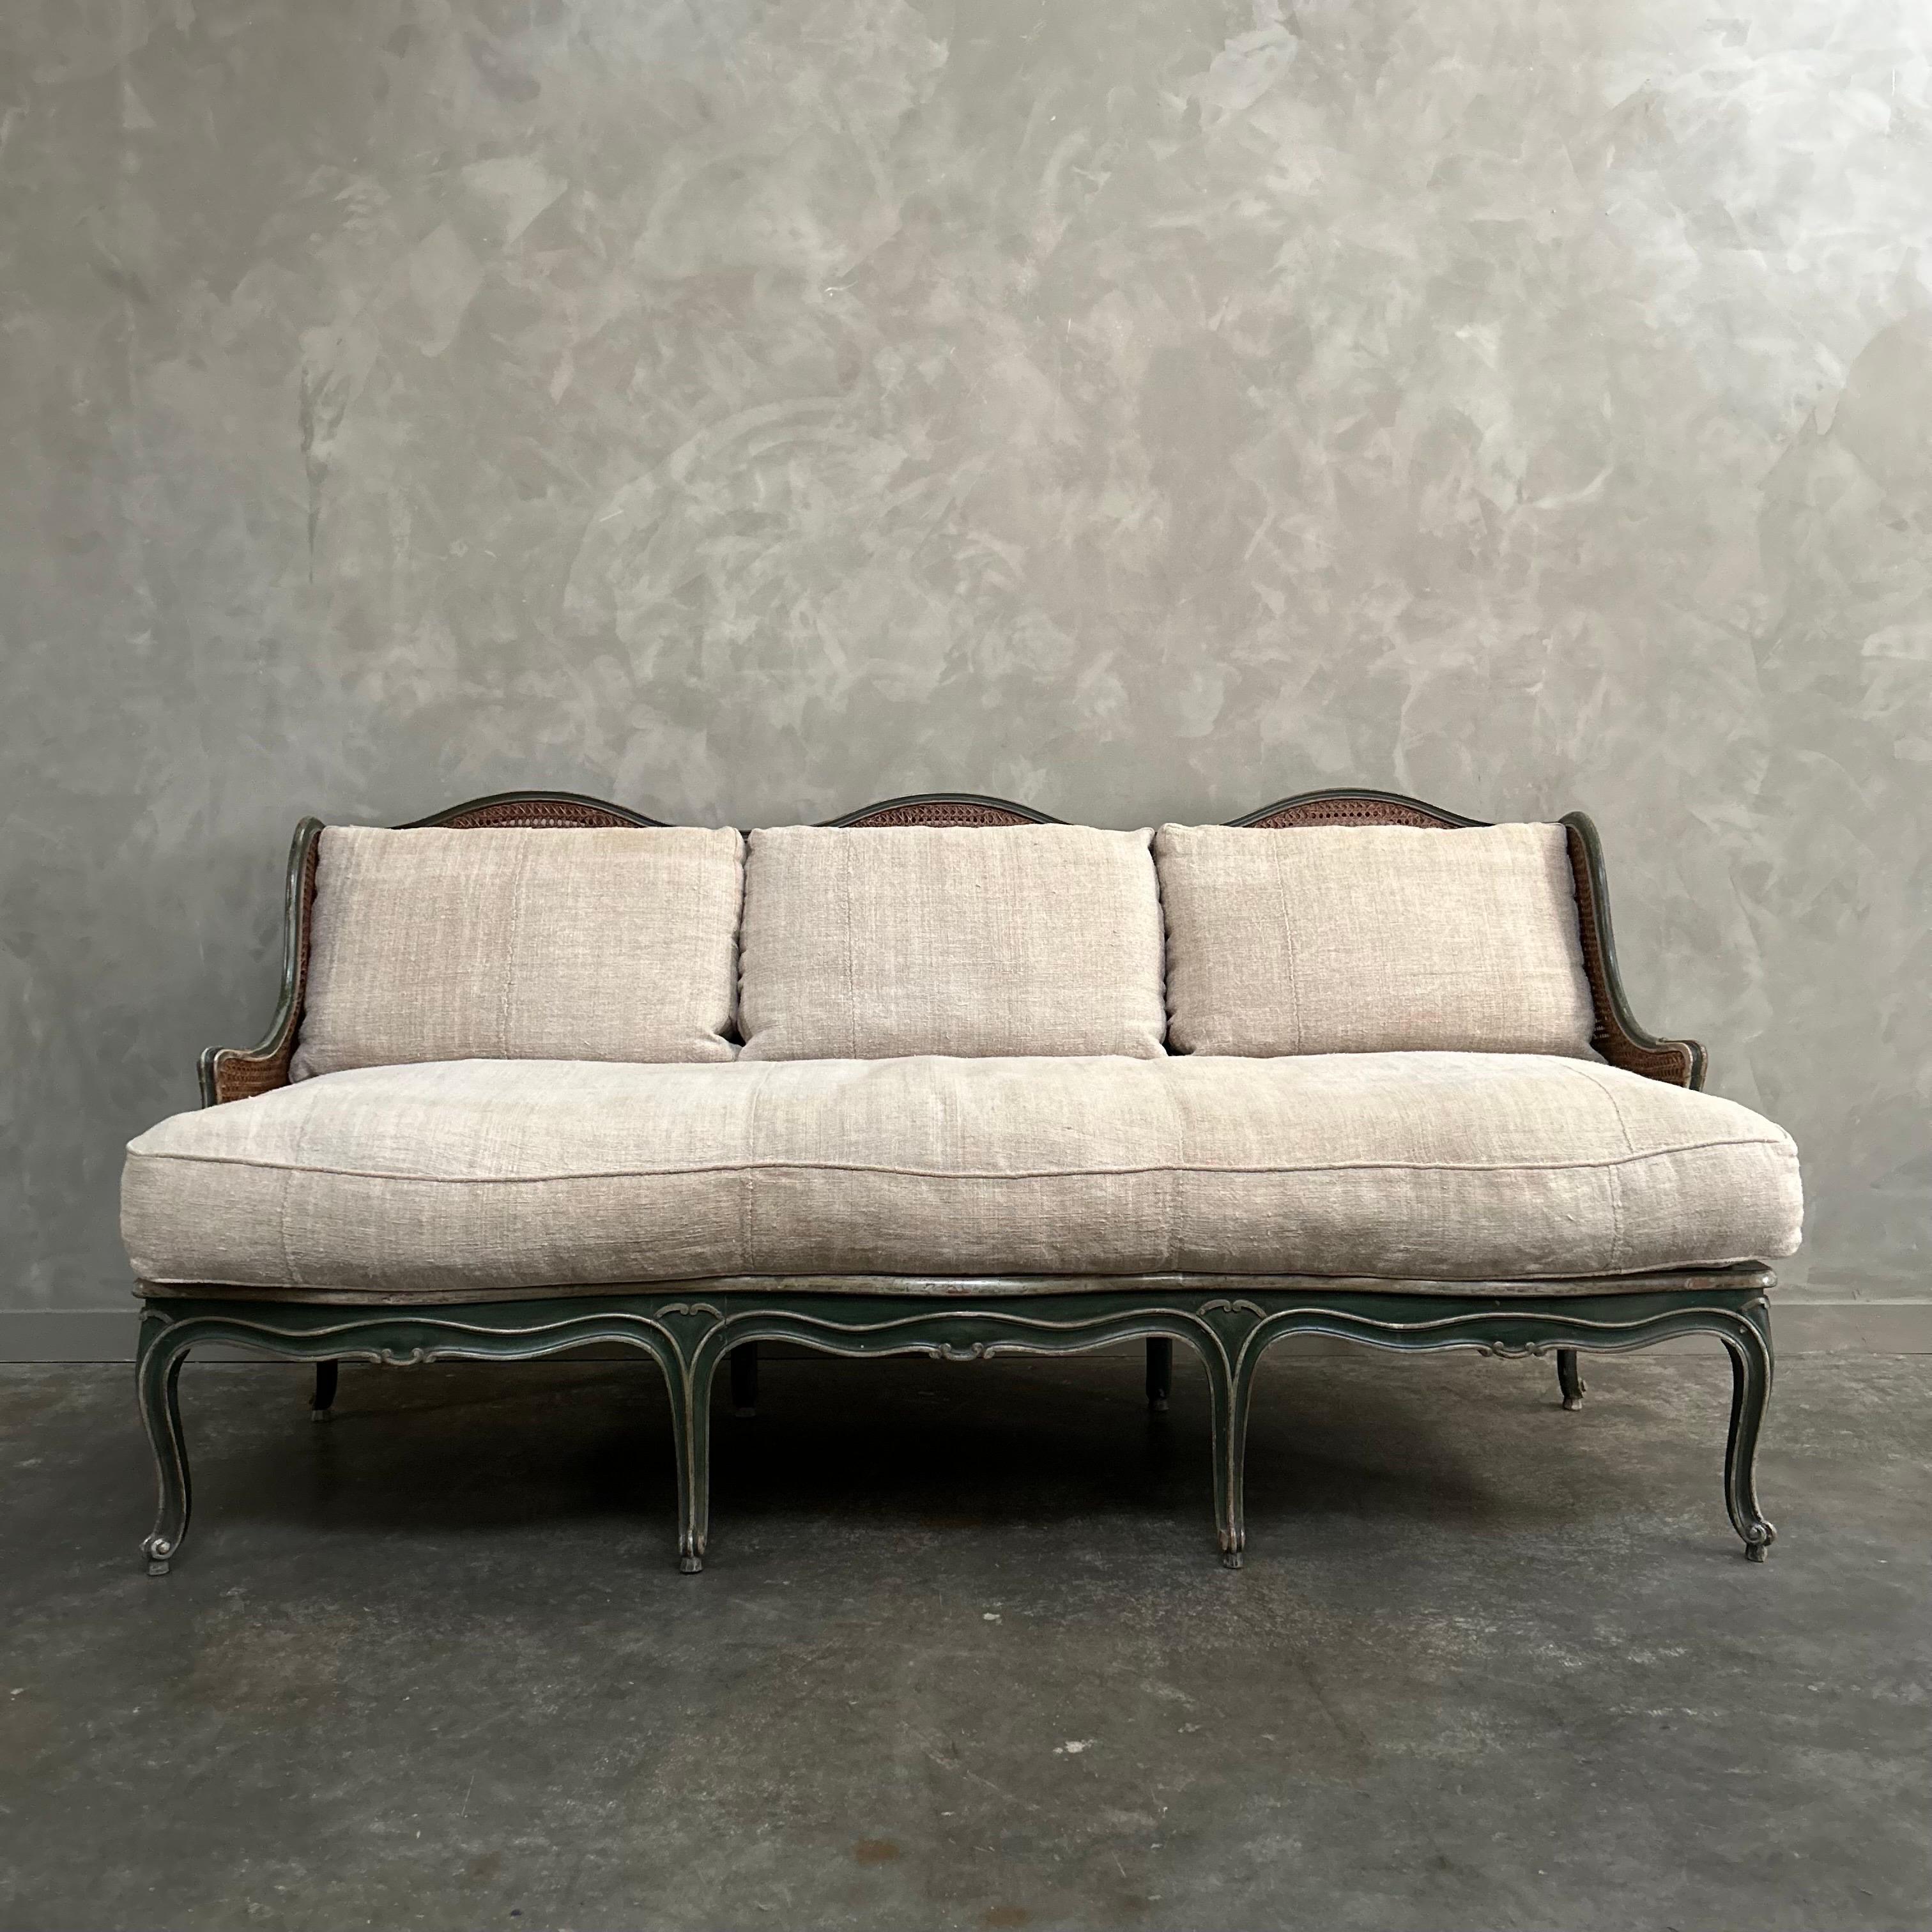 Sofa im Rokoko-Stil aus dem späten 19. bis frühen 20. Jahrhundert mit originaler grüner und französisch-grauer Lackierung mit originalem Distress-Aged Finish.  
Größe: 80 